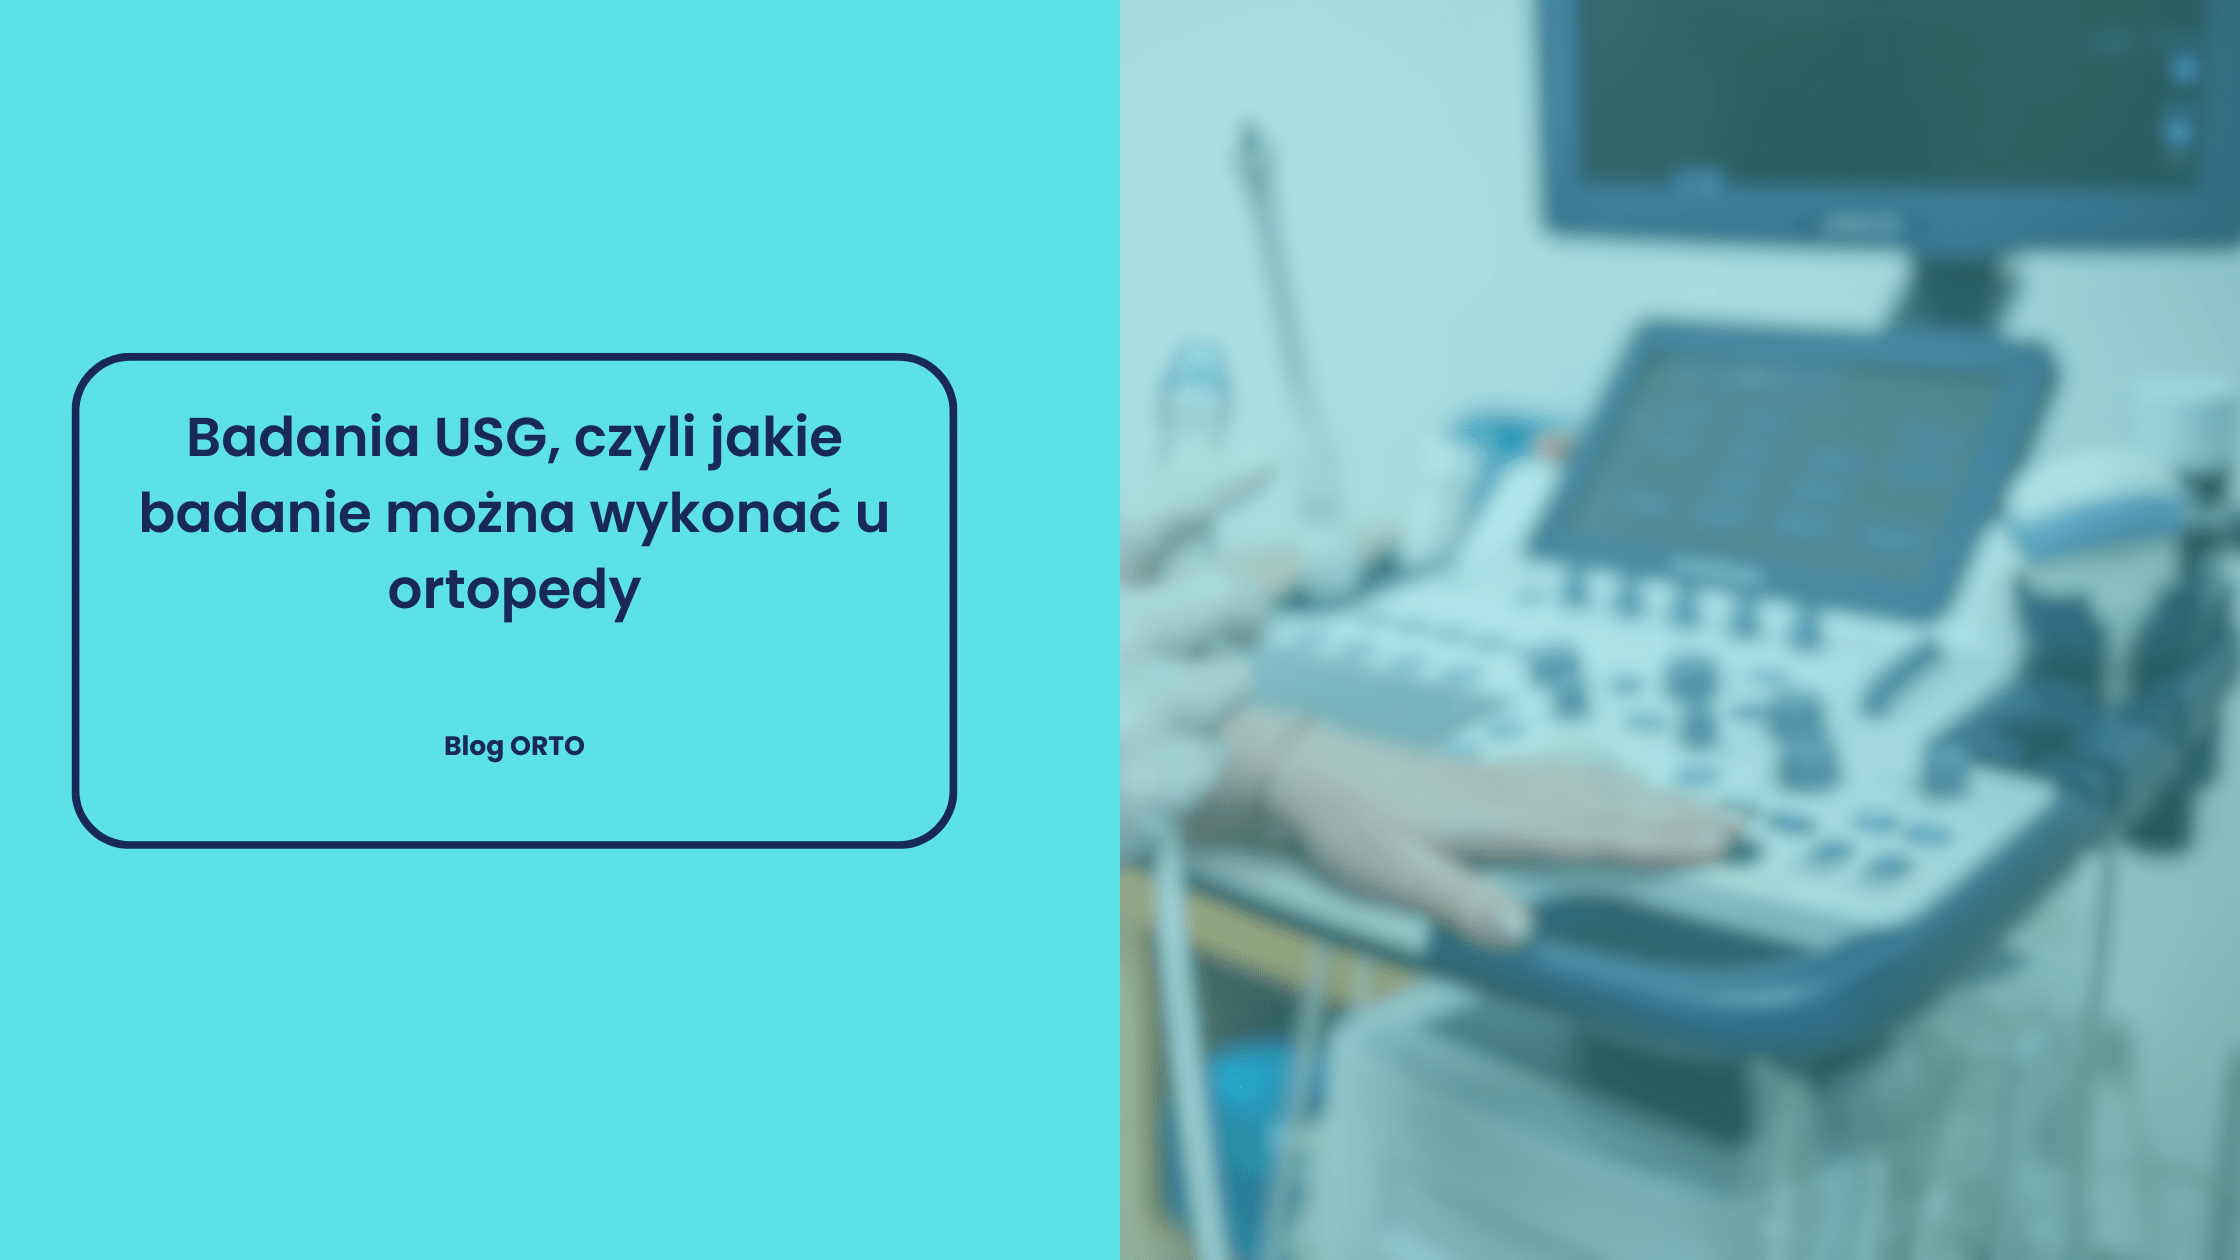 Badania USG, czyli jakie badanie można wykonać u ortopedy - blog orto.pl